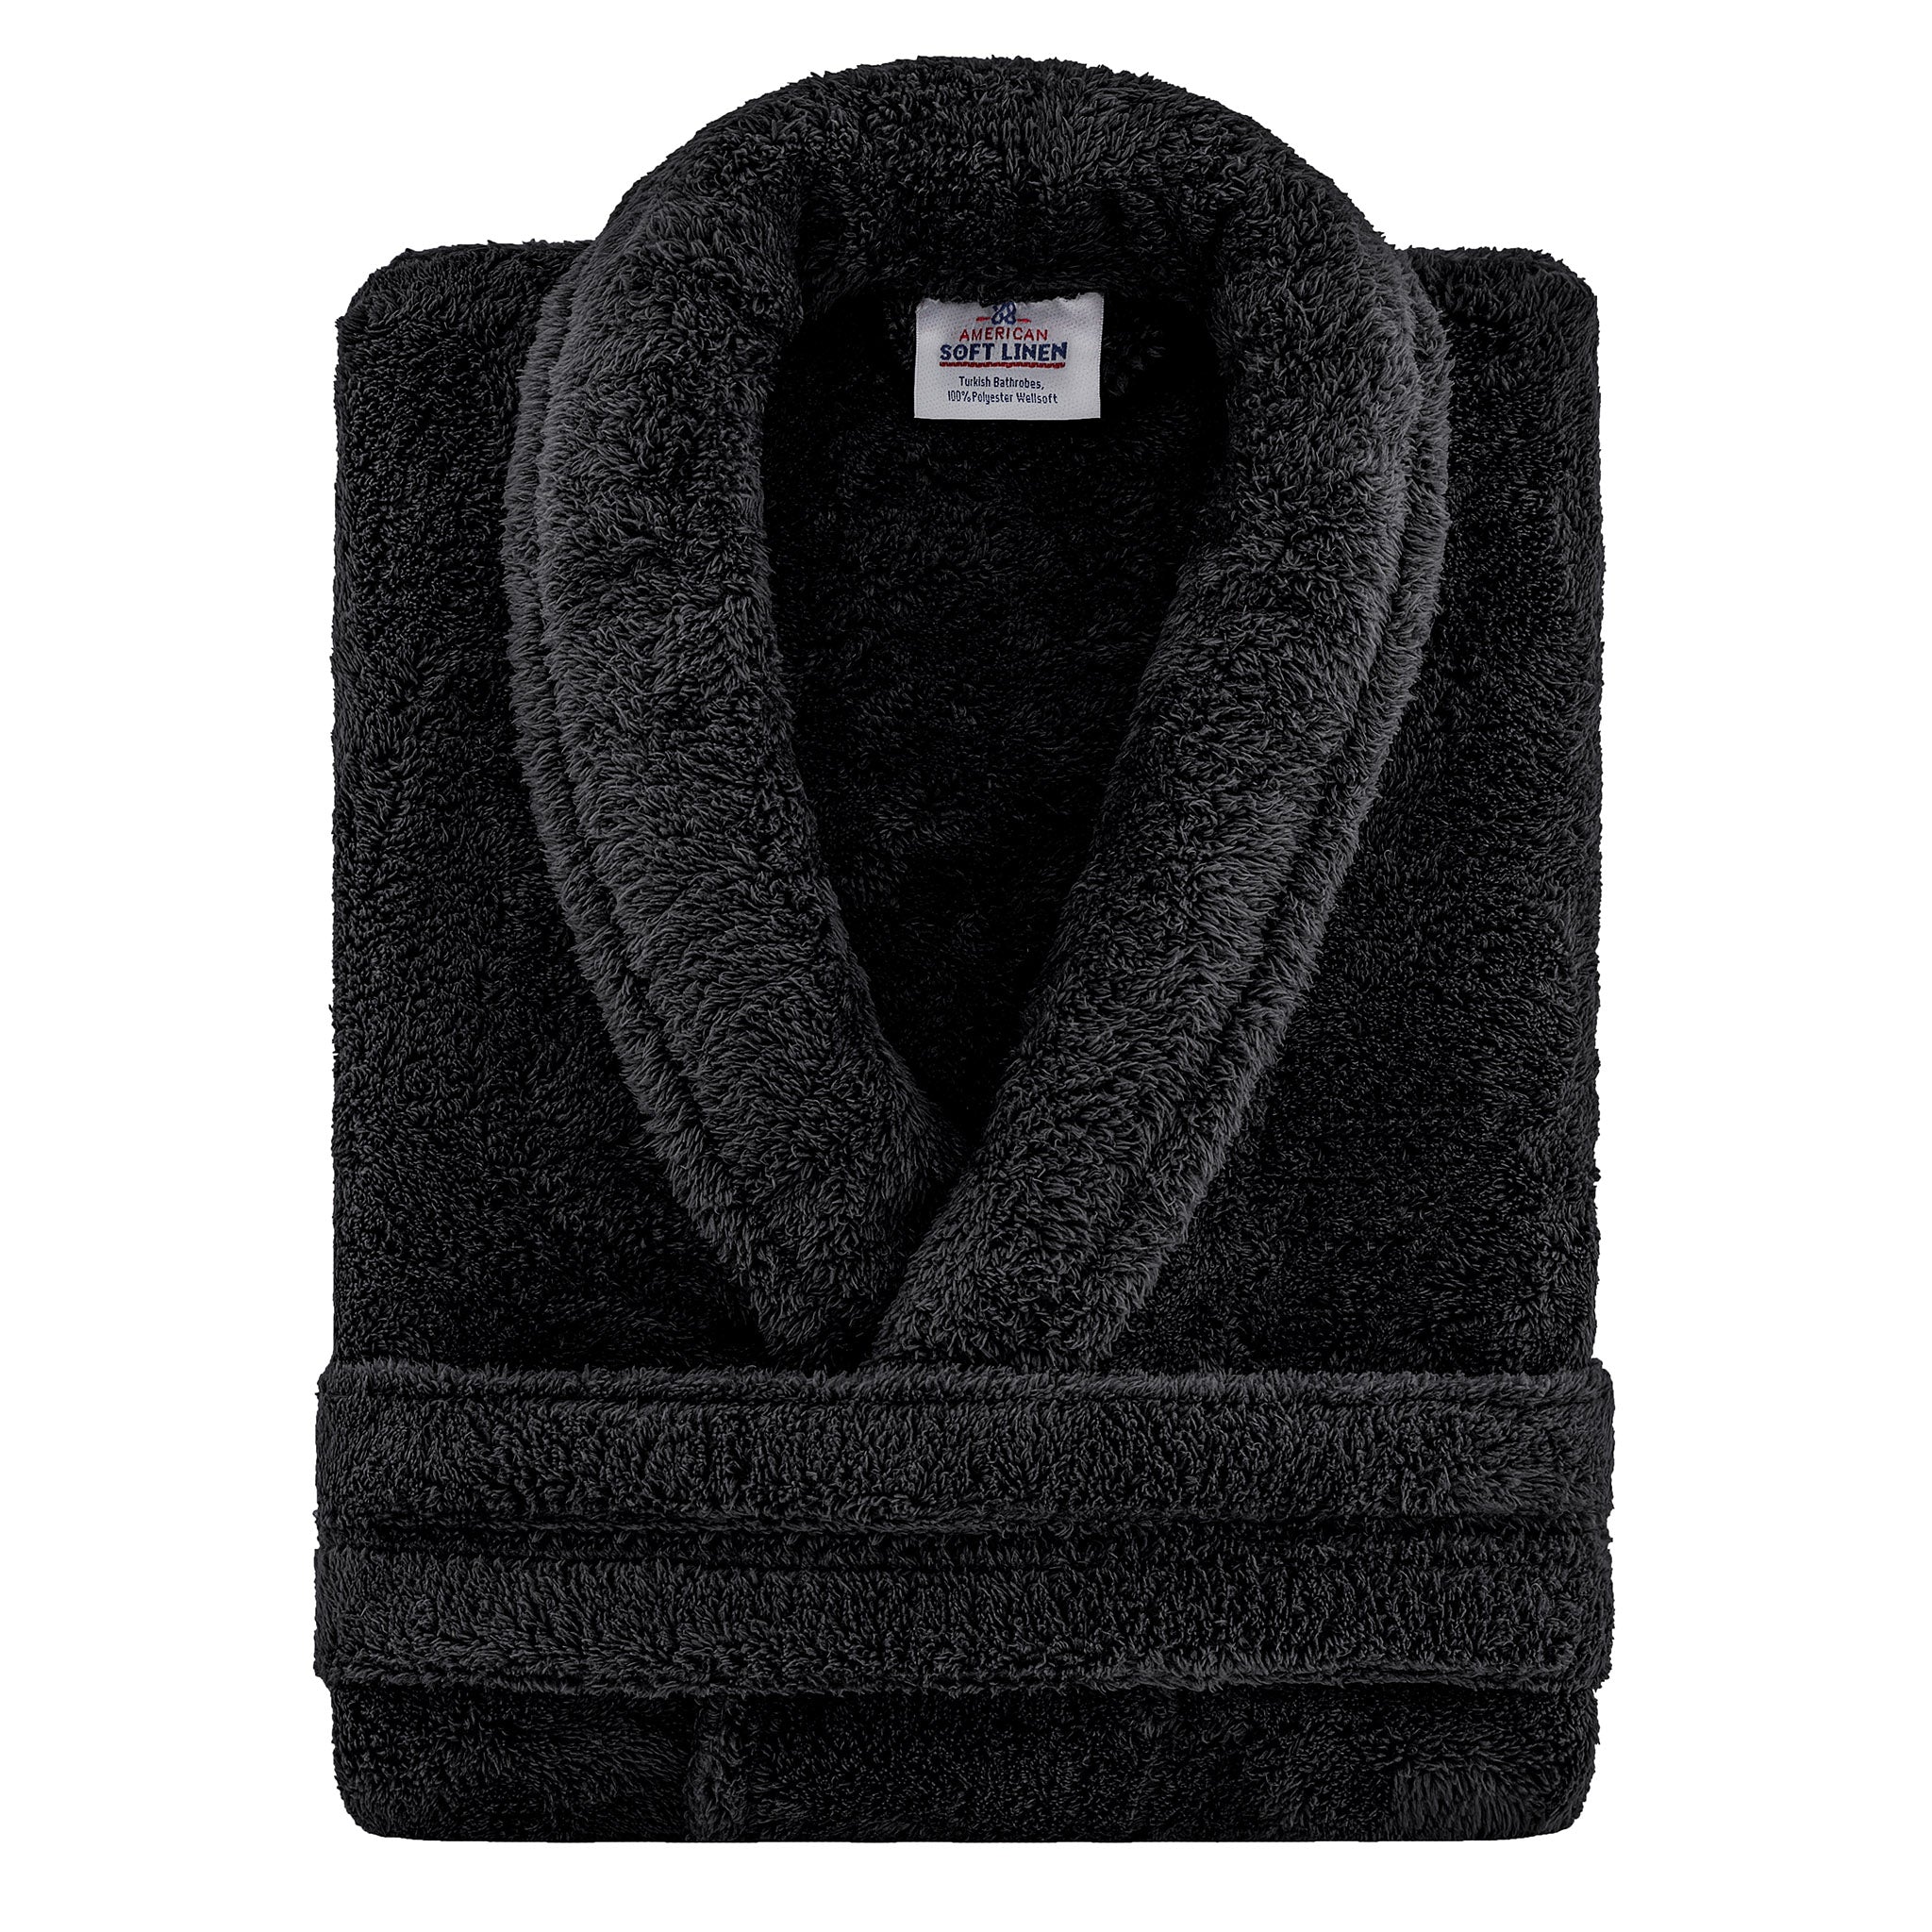 American Soft Linen Super Soft Absorbent and Fluffy Unisex Fleece Bathrobe -12 Set Case Pack -XL-XXL-black-3